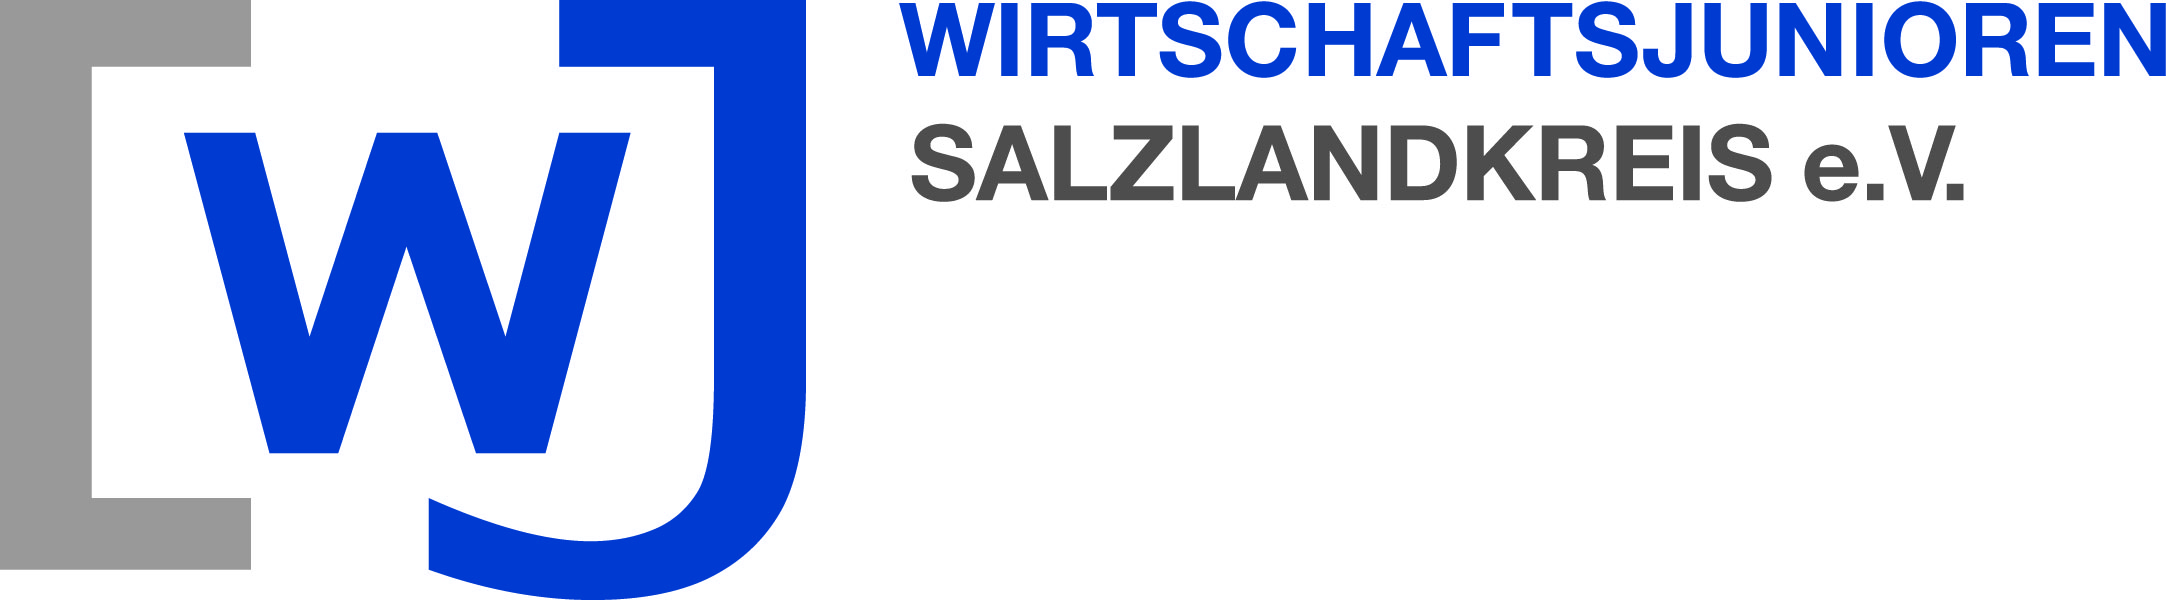 Wirtschaftsjunioren Salzlandkreis